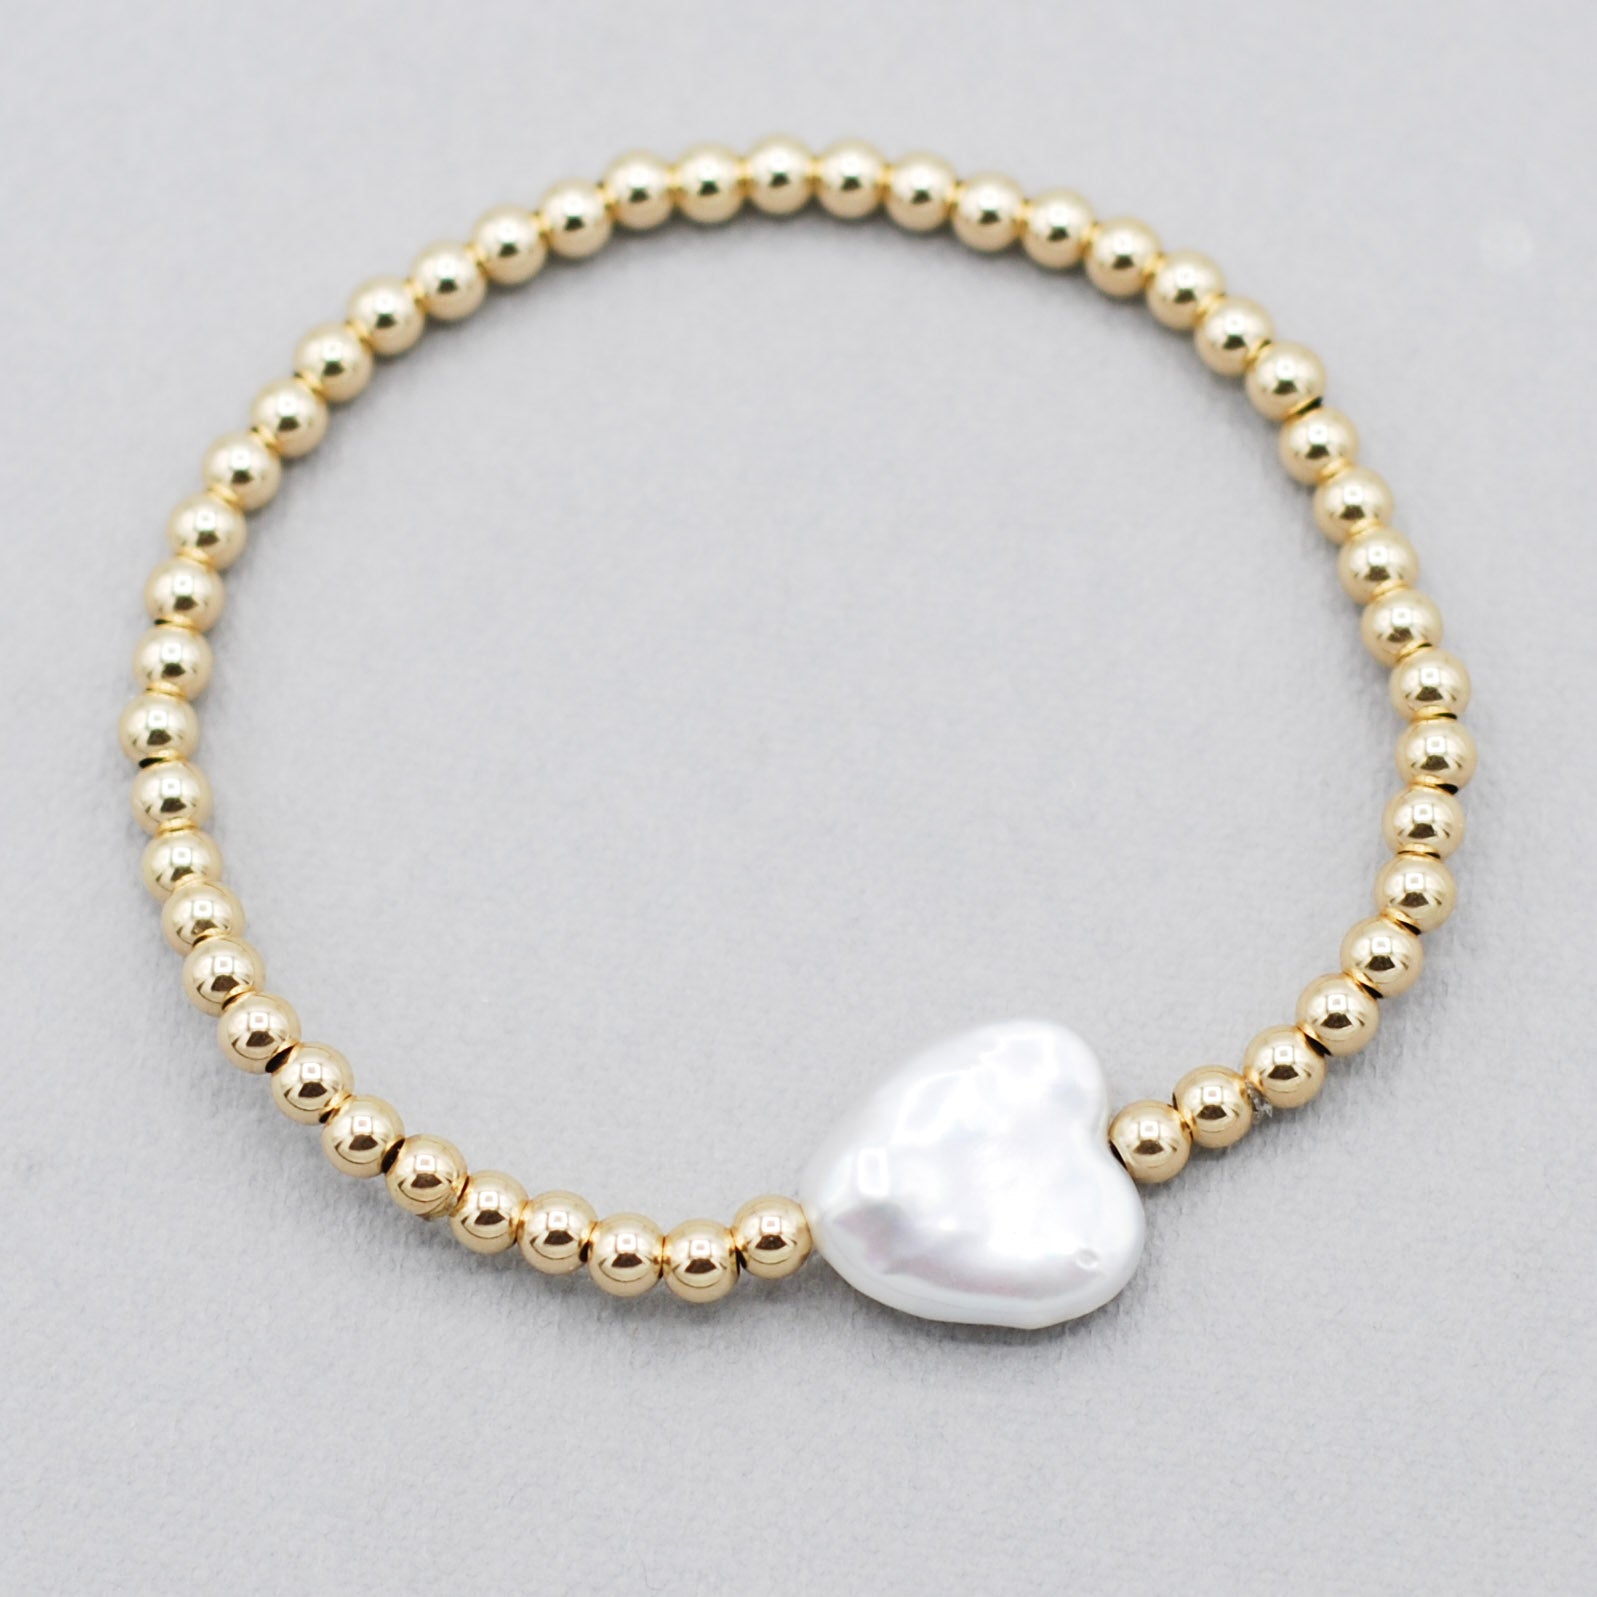 4mm 14k Gold Filled & Freshwater Pearl Heart Bracelet - Jewel Ya